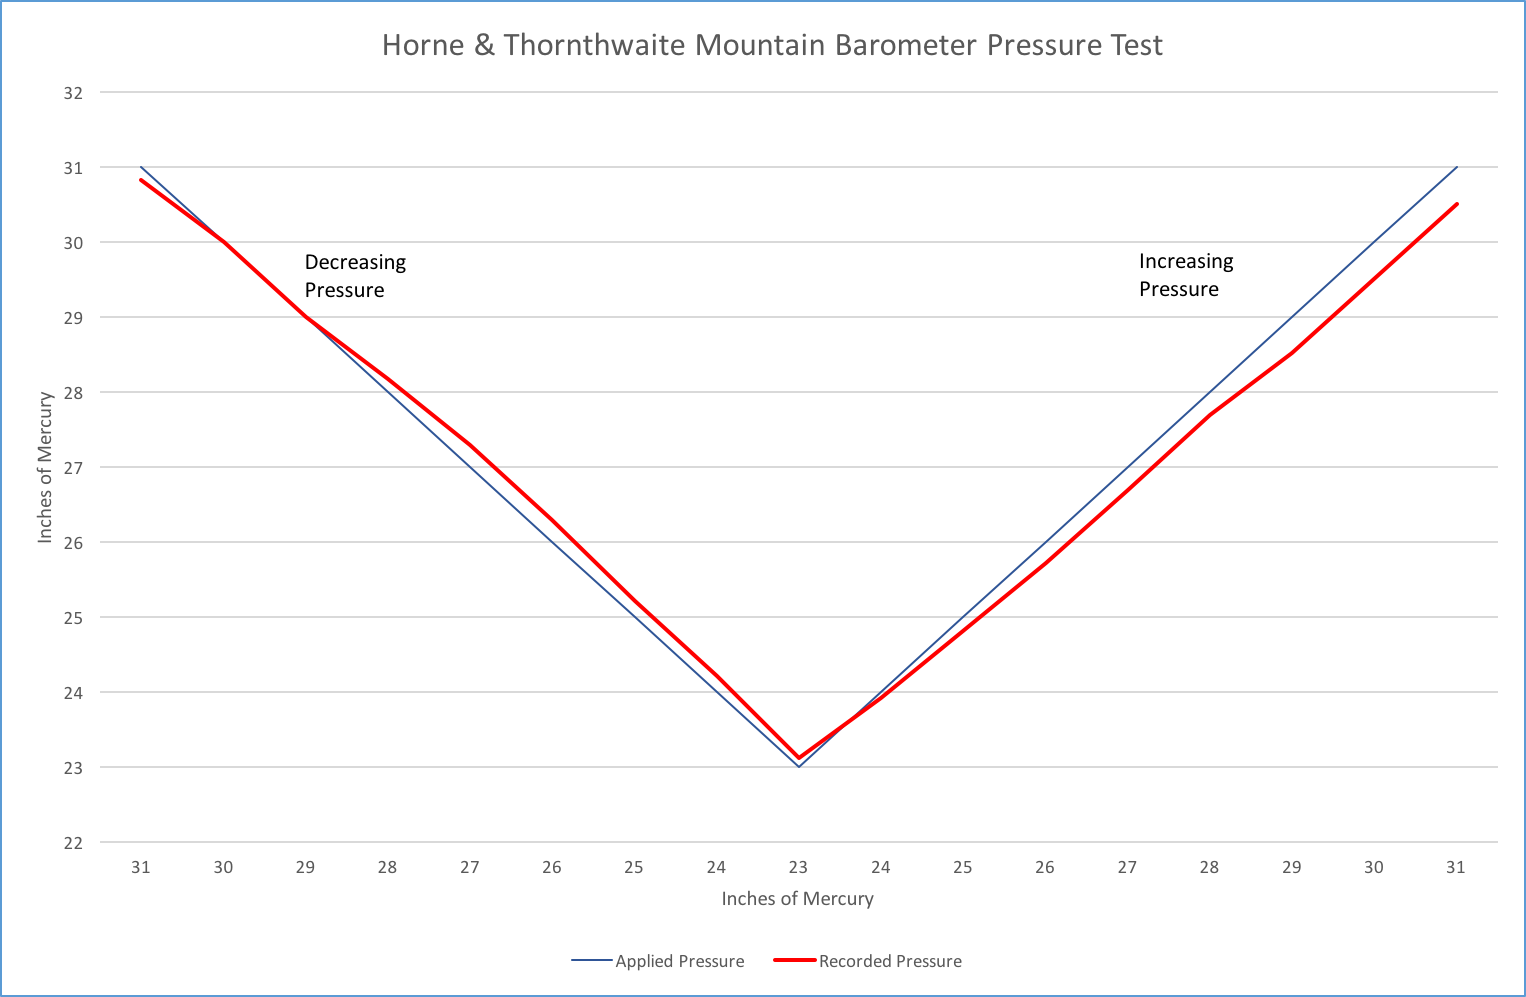 Horne & Thornthwaite Mountain Barometer Test Results